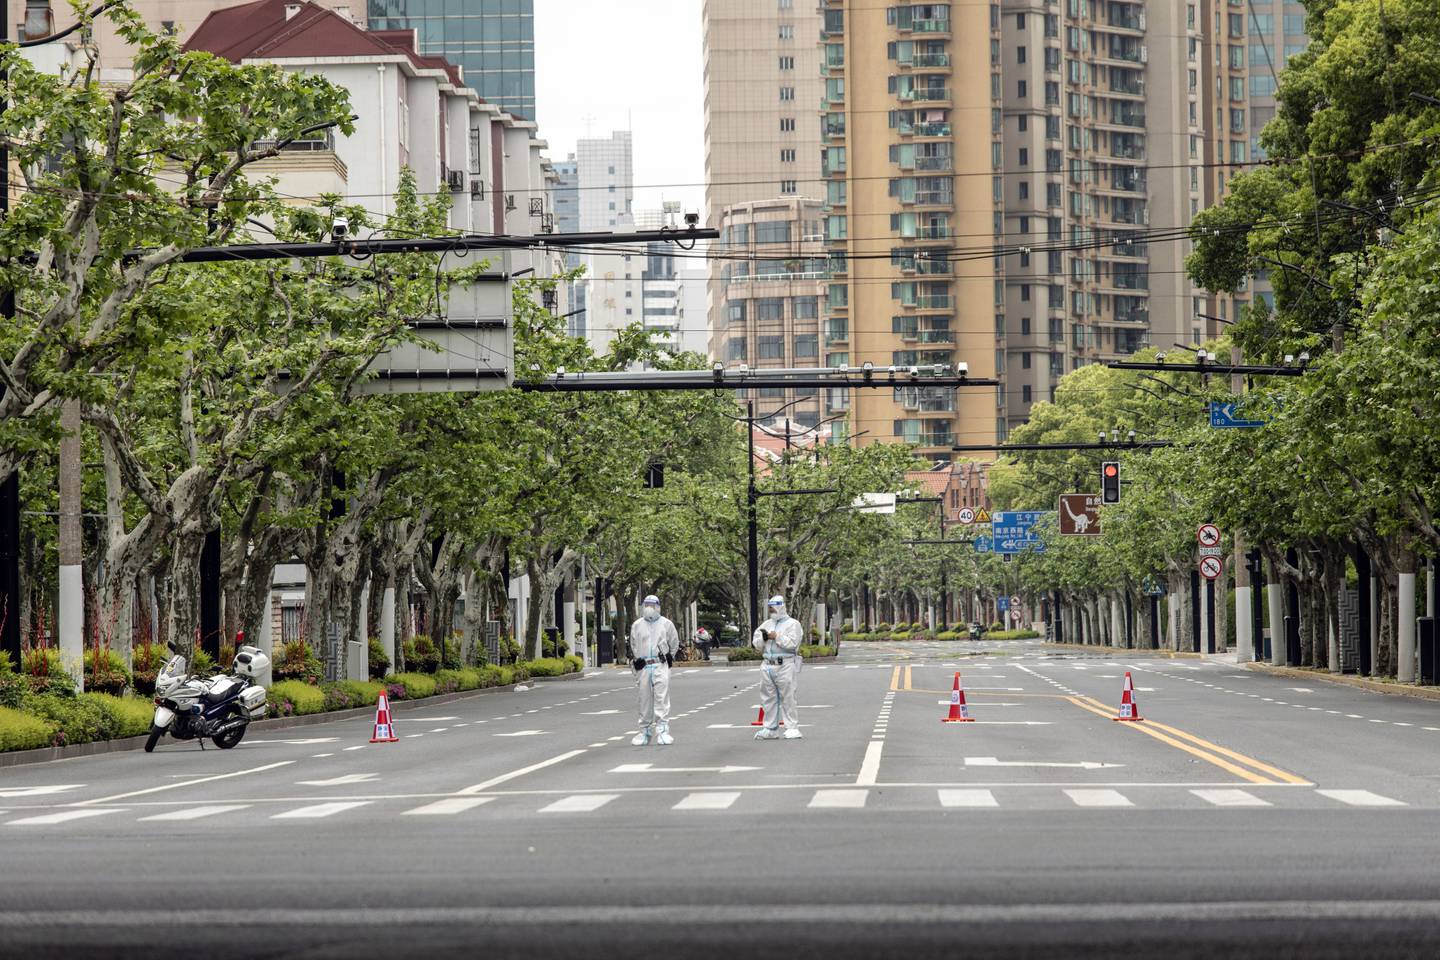 Oficiales de policía con equipo de protección personal hacen guardia en una intersección durante un cierre por covid-19 en Shanghái.Fuente: Bloomberg